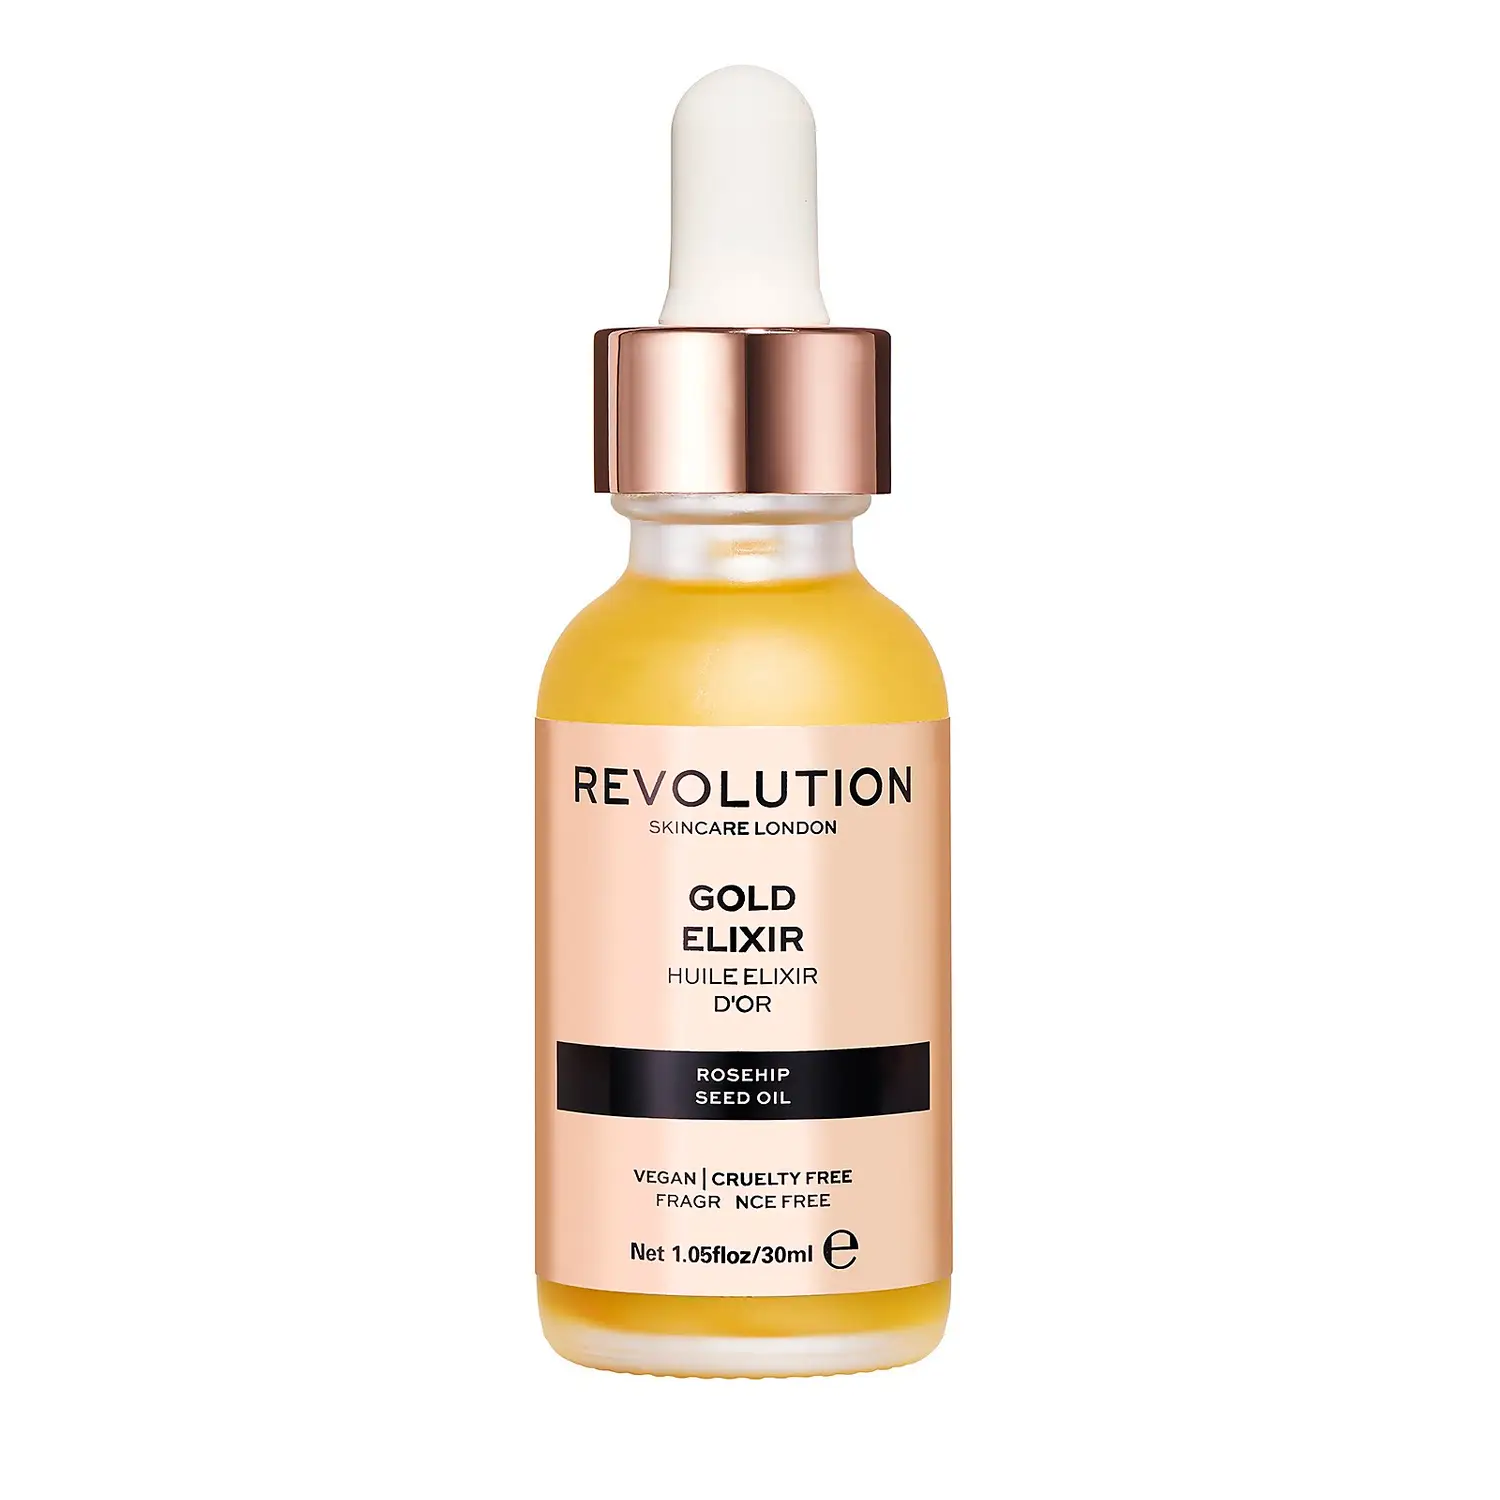 Revolution Skincare Gold Elixir 30ml £7.00